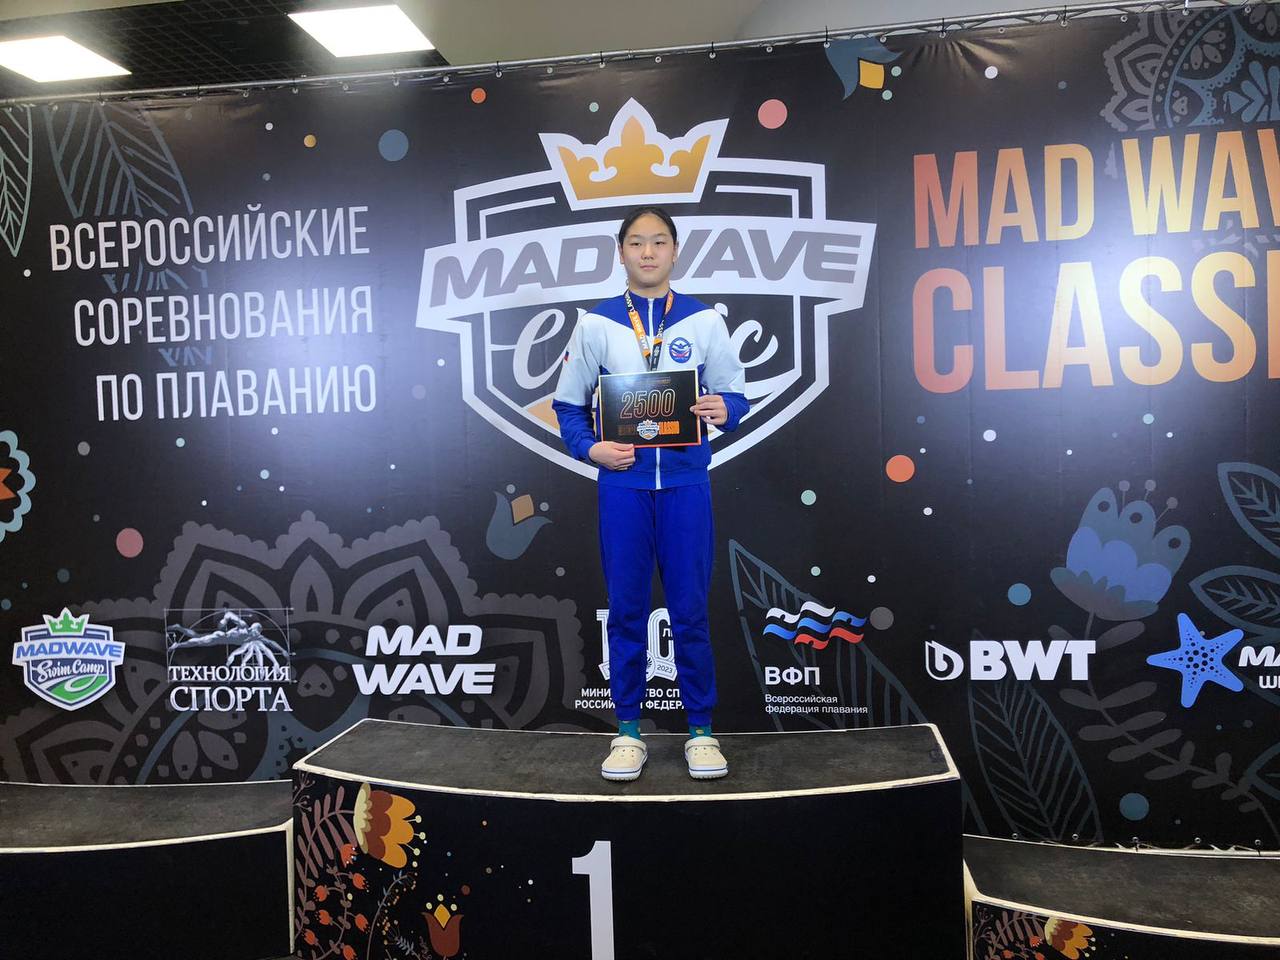 Анастасия завоевала медали во всех трех стартах. Фото: Пресс-служба правительства Амурской области